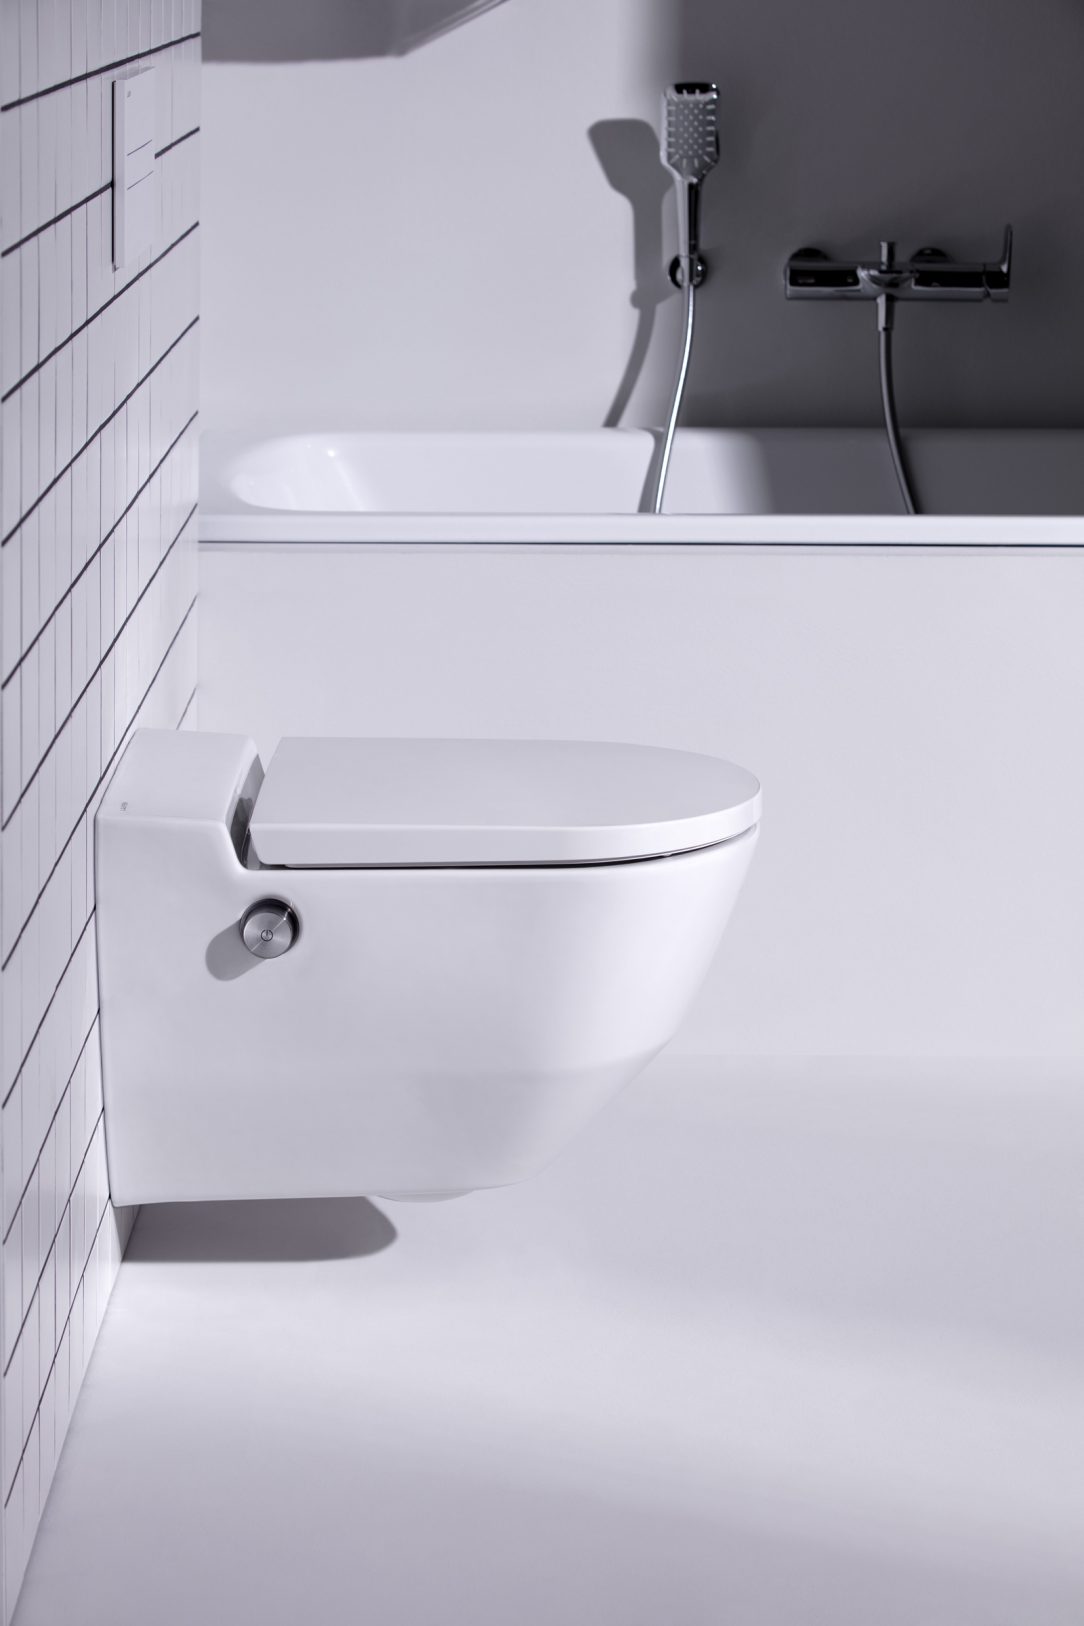 WC Cleanet Navia Nabízí vysoký uživatelský komfort a příjemný vzhled